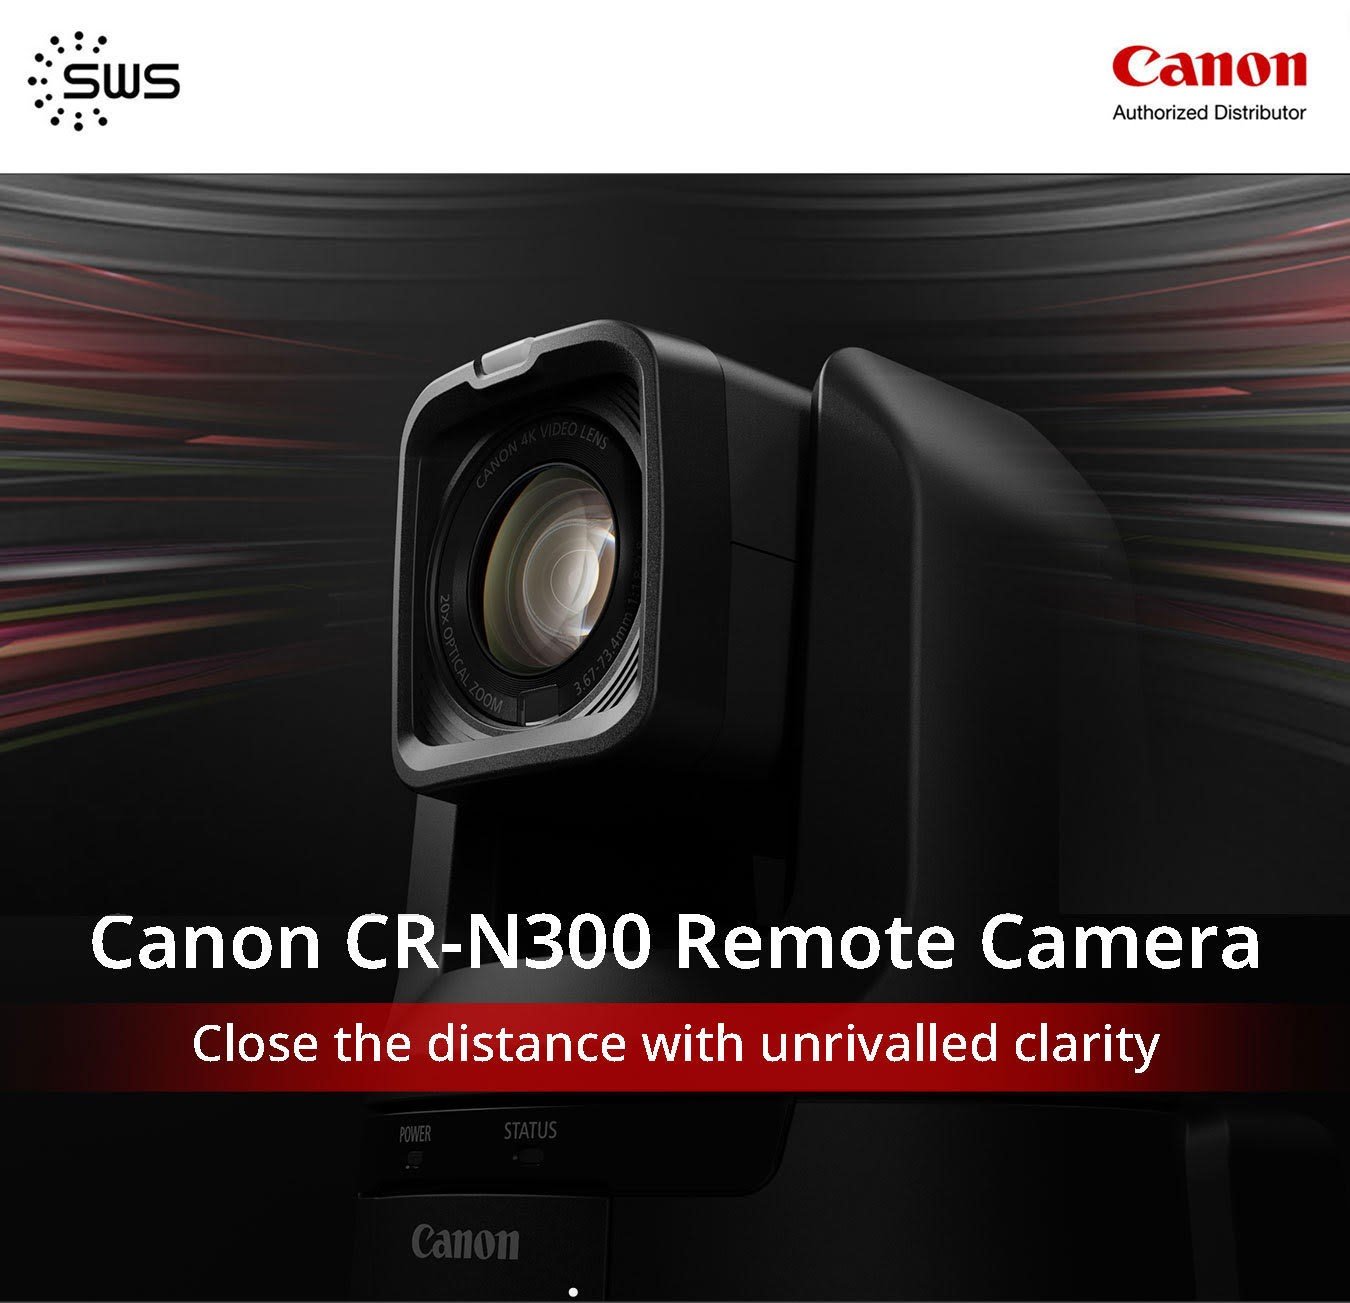 เชิญพบกับกล้อง Canon Remote Camera (PTZ) ในรูปแบบการทำงาน Indoor มีความละเอียดภาพ 4K ควบคุมการทำงานง่าย ราคาประหยัด!